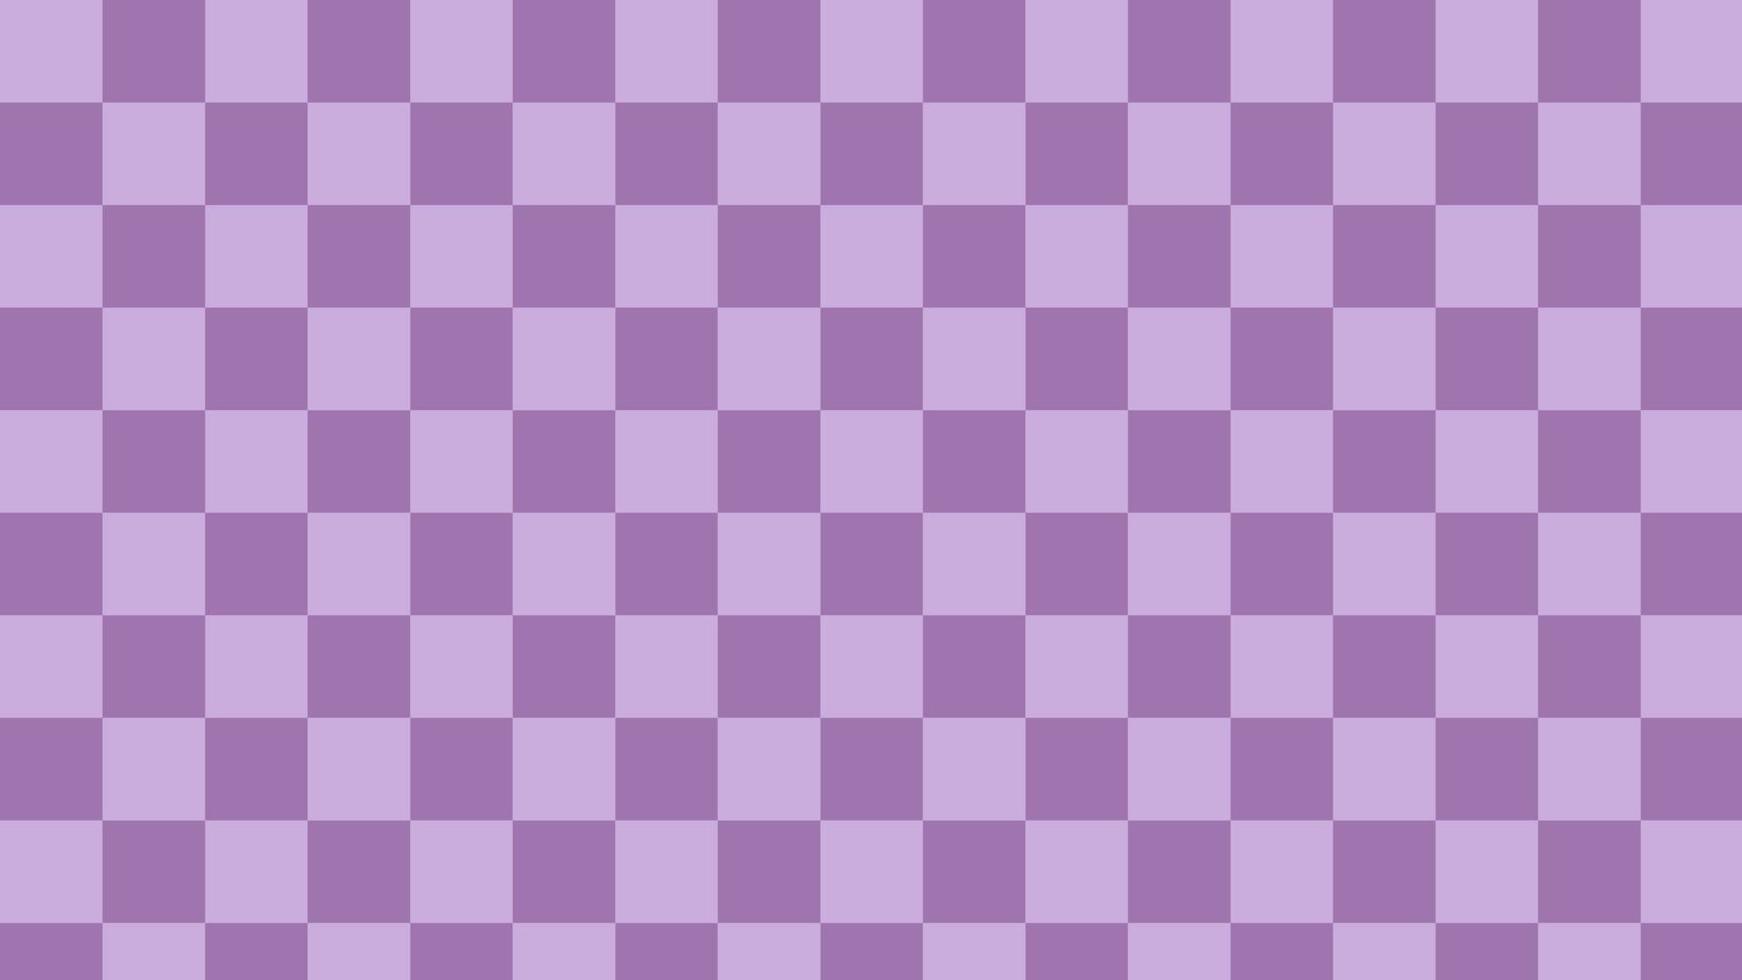 xadrez violeta roxo, guingão, xadrez, ilustração de fundo padrão de damas, perfeito para papel de parede, pano de fundo, cartão postal, plano de fundo para seu projeto vetor